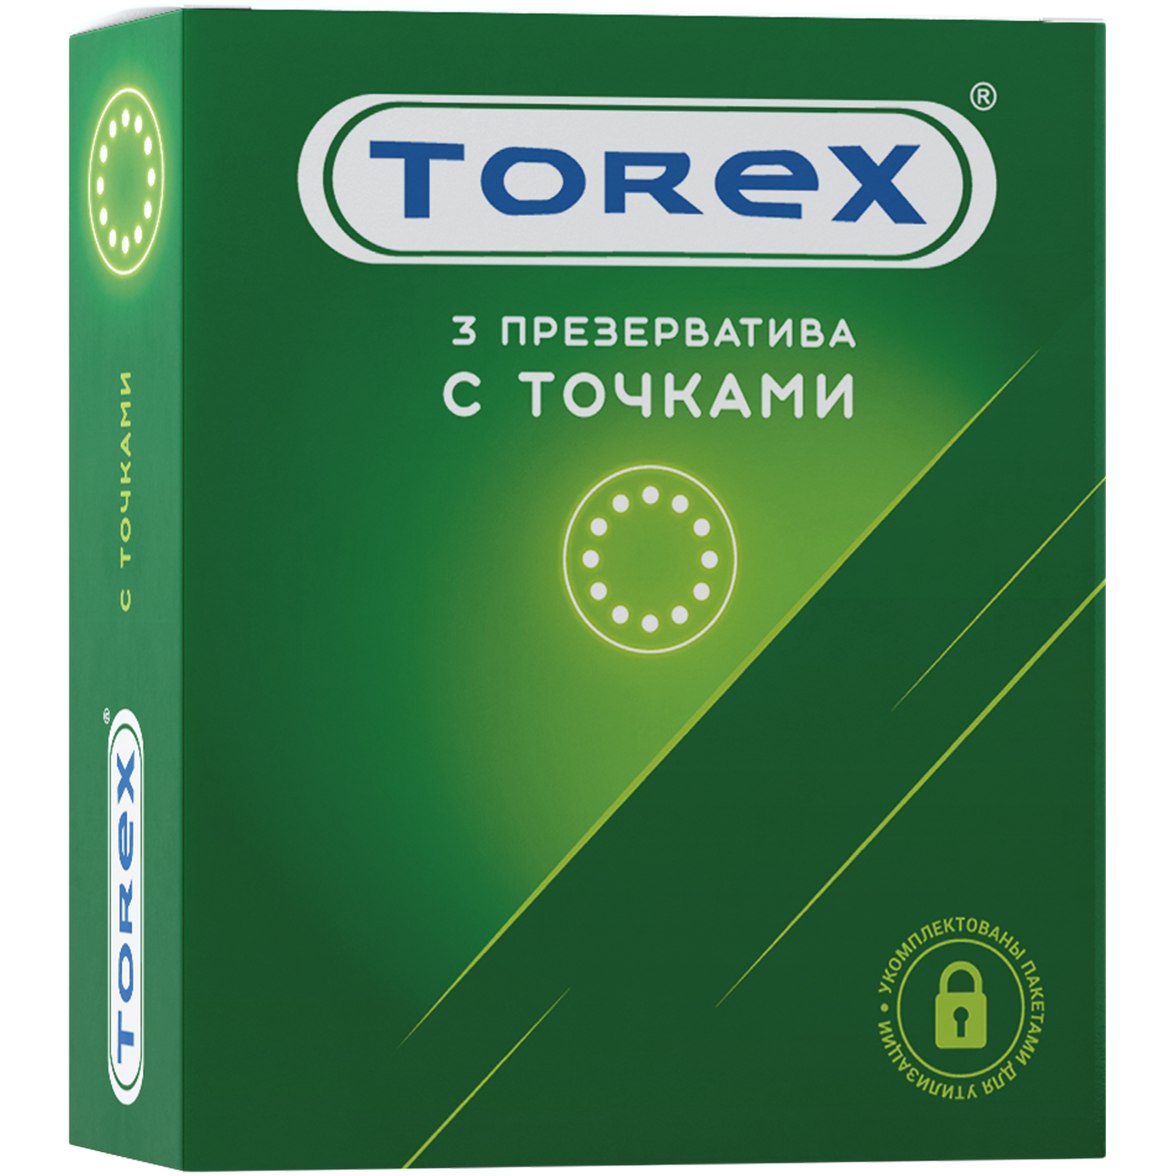 Torex - Стимулирующий презерватив (3 шт)